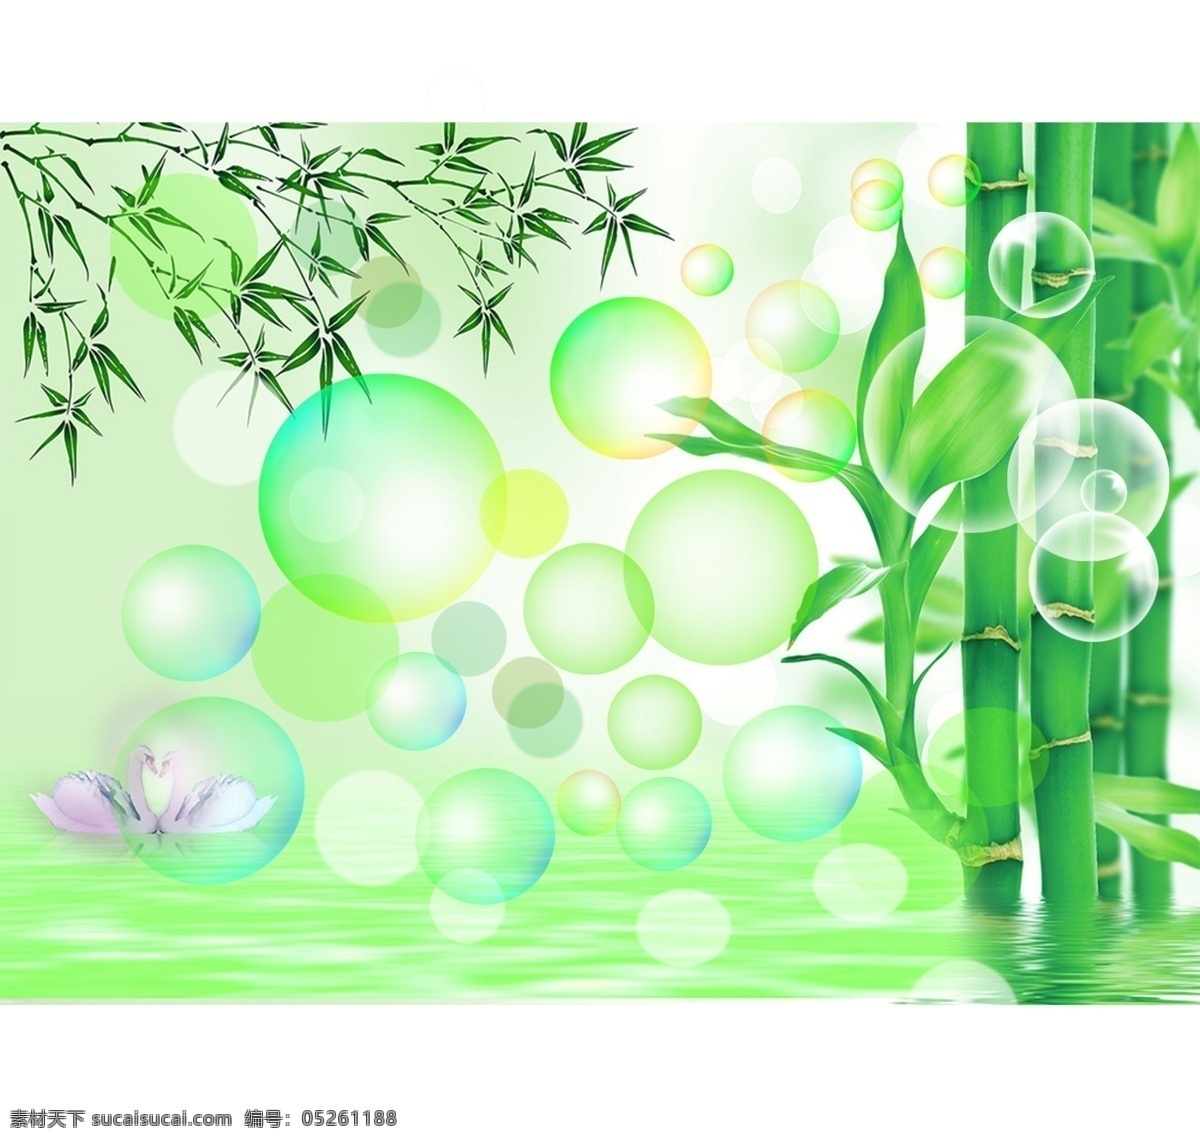 绿色 背景 竹子 源文件 水面 波纹 枝条 气泡 天鹅 绿色背景 psd源文件